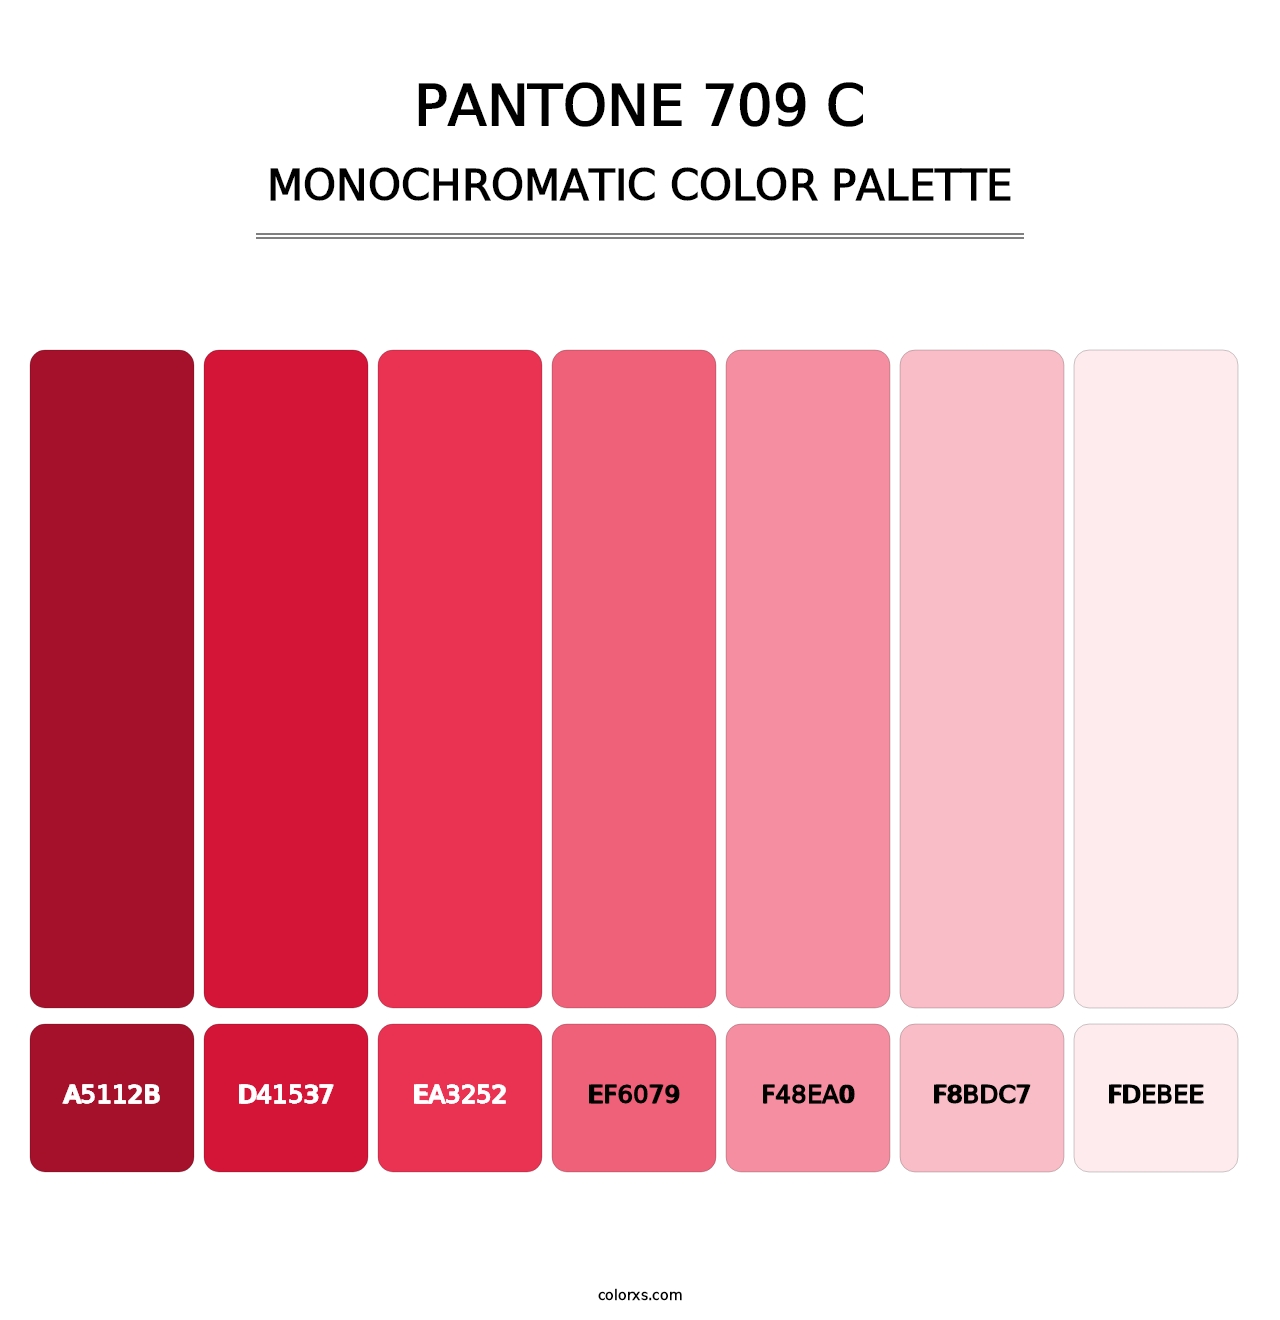 PANTONE 709 C - Monochromatic Color Palette